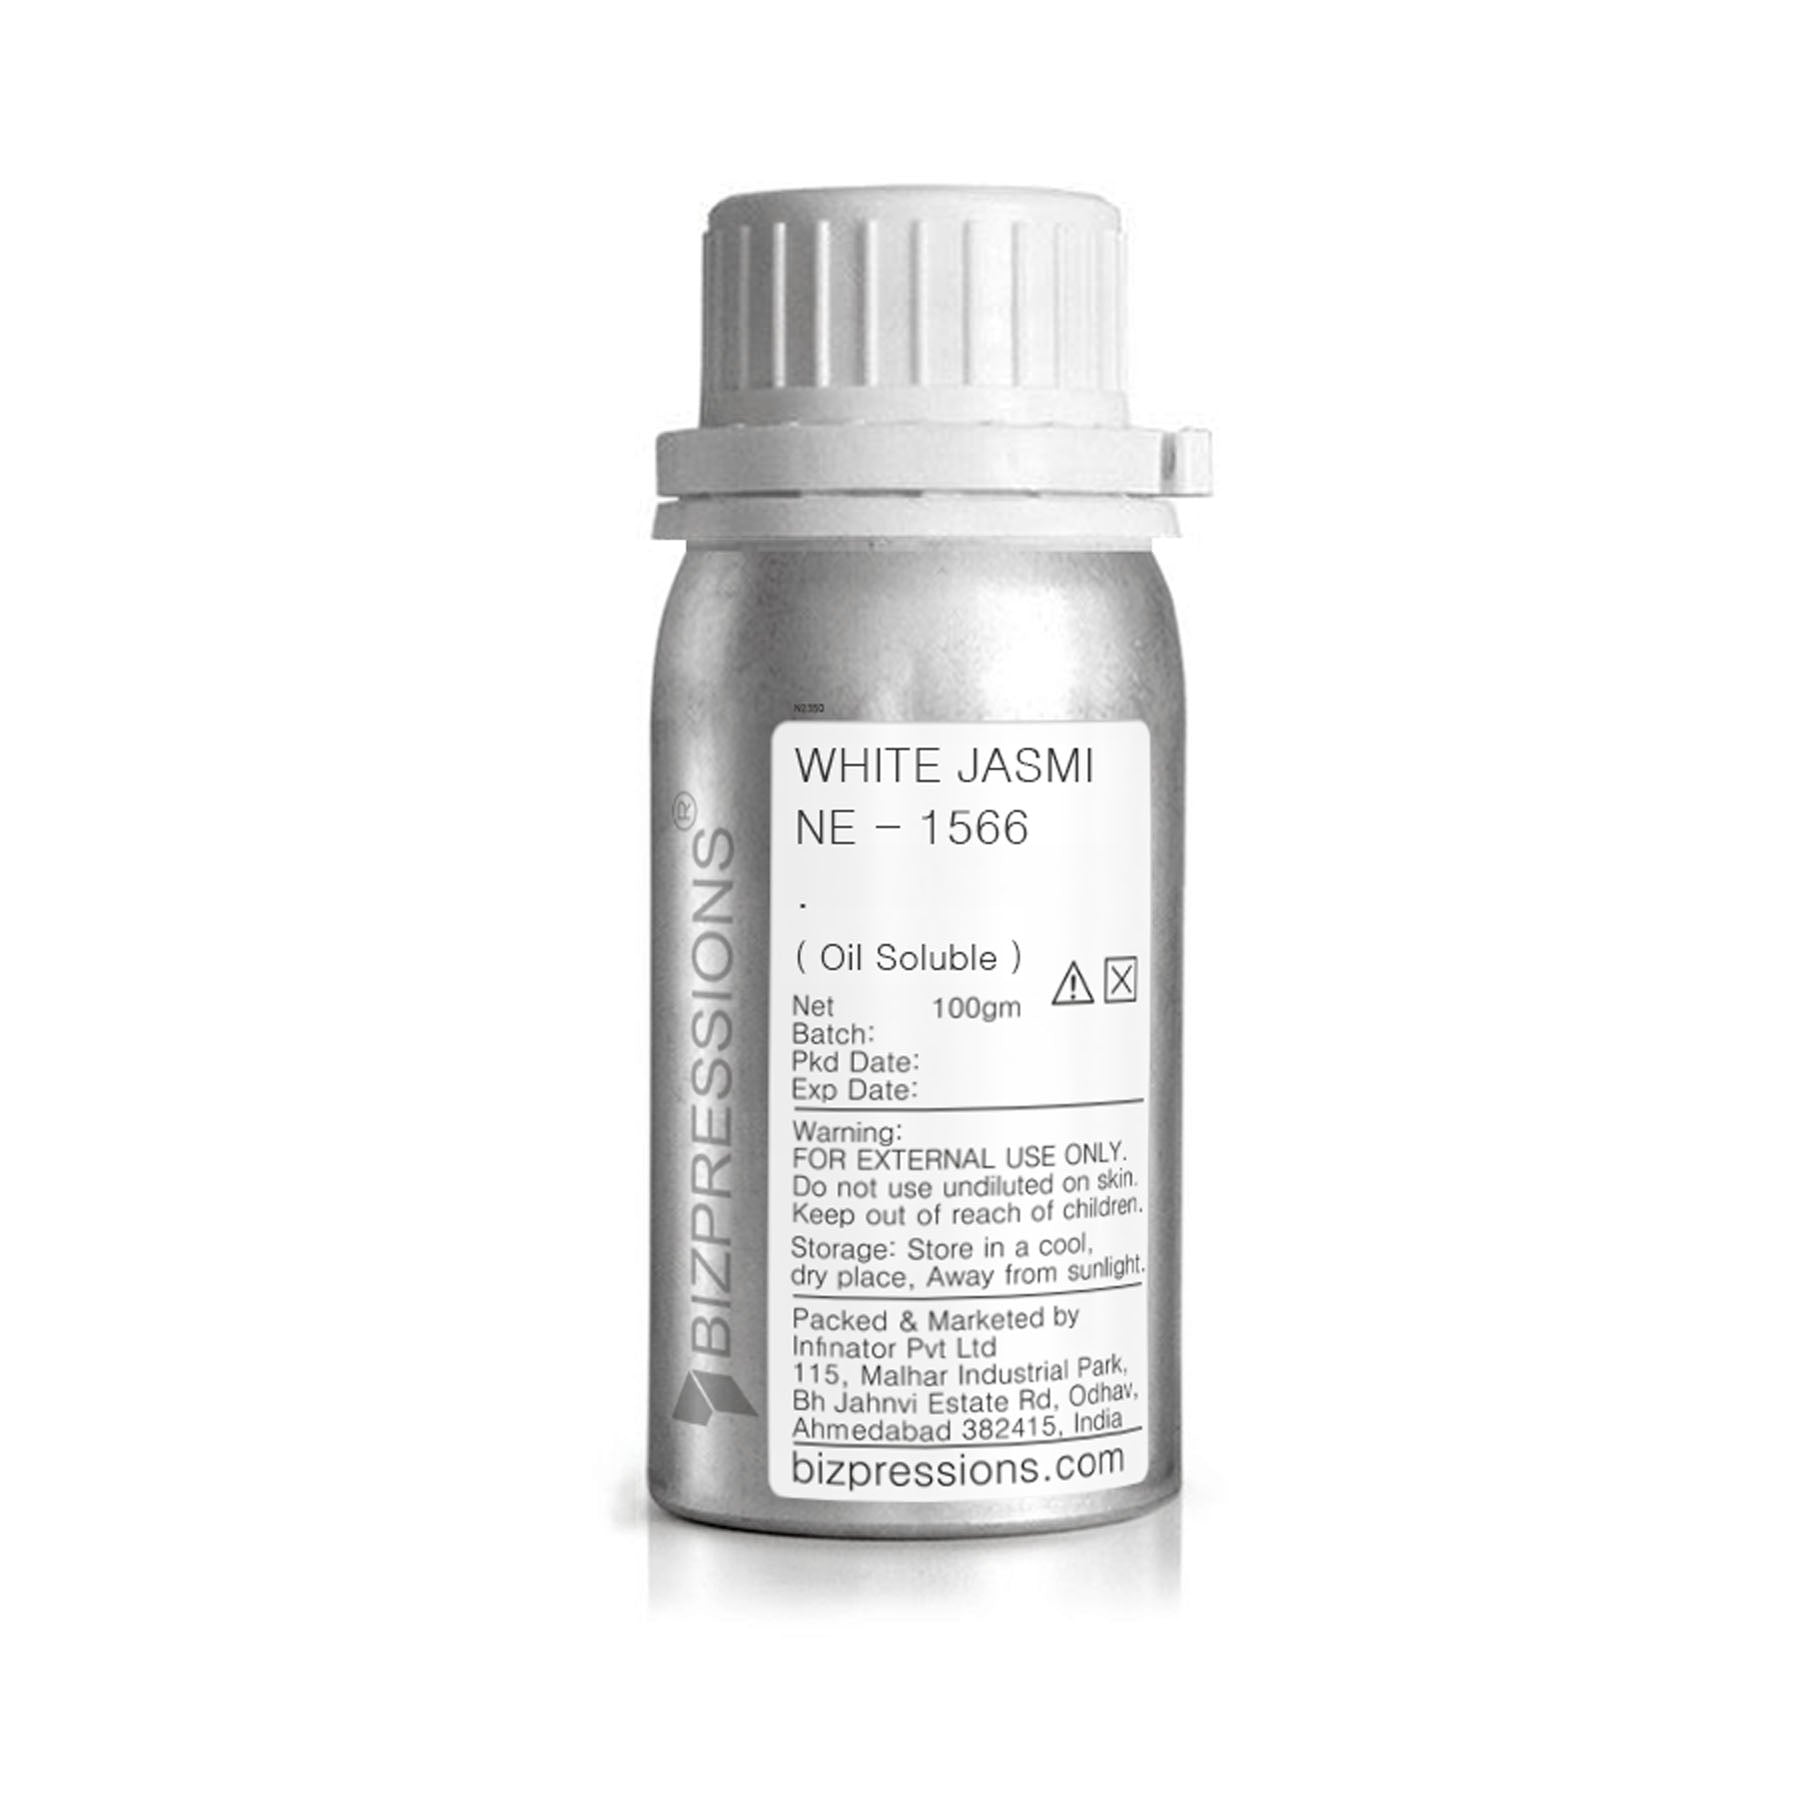 WHITE JASMINE - 1566 - Fragrance ( Oil Soluble ) - 100 gm